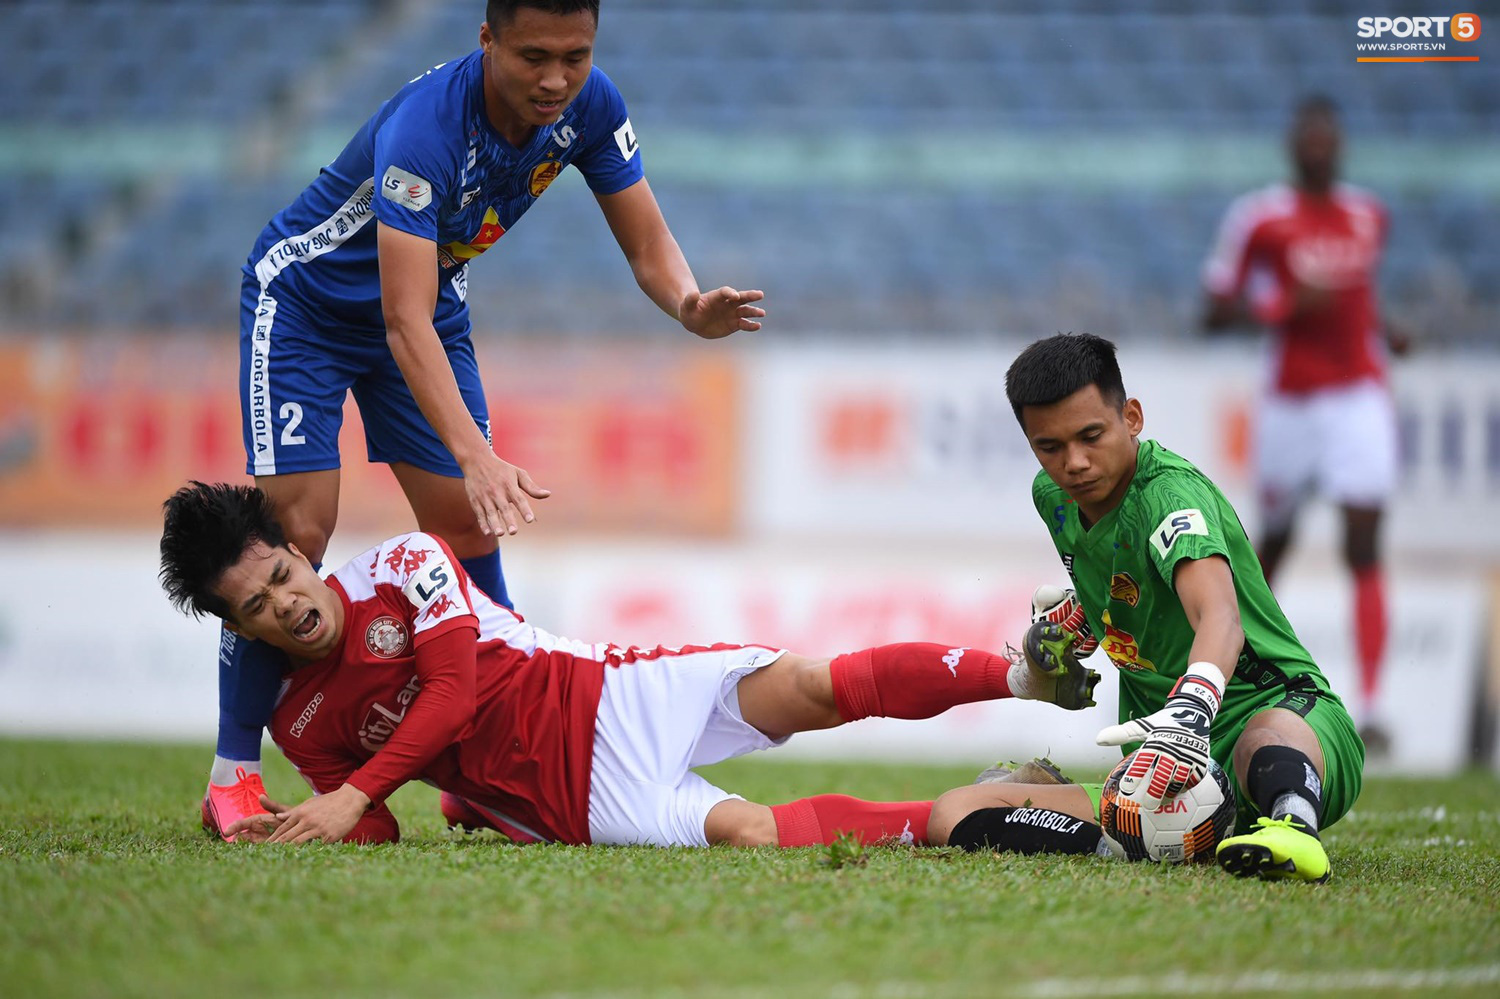 Công Phượng kiến tạo, TP. Hồ Chí Minh đánh bại Quảng Nam trong ngày khai màn V.League 2020 - Ảnh 5.